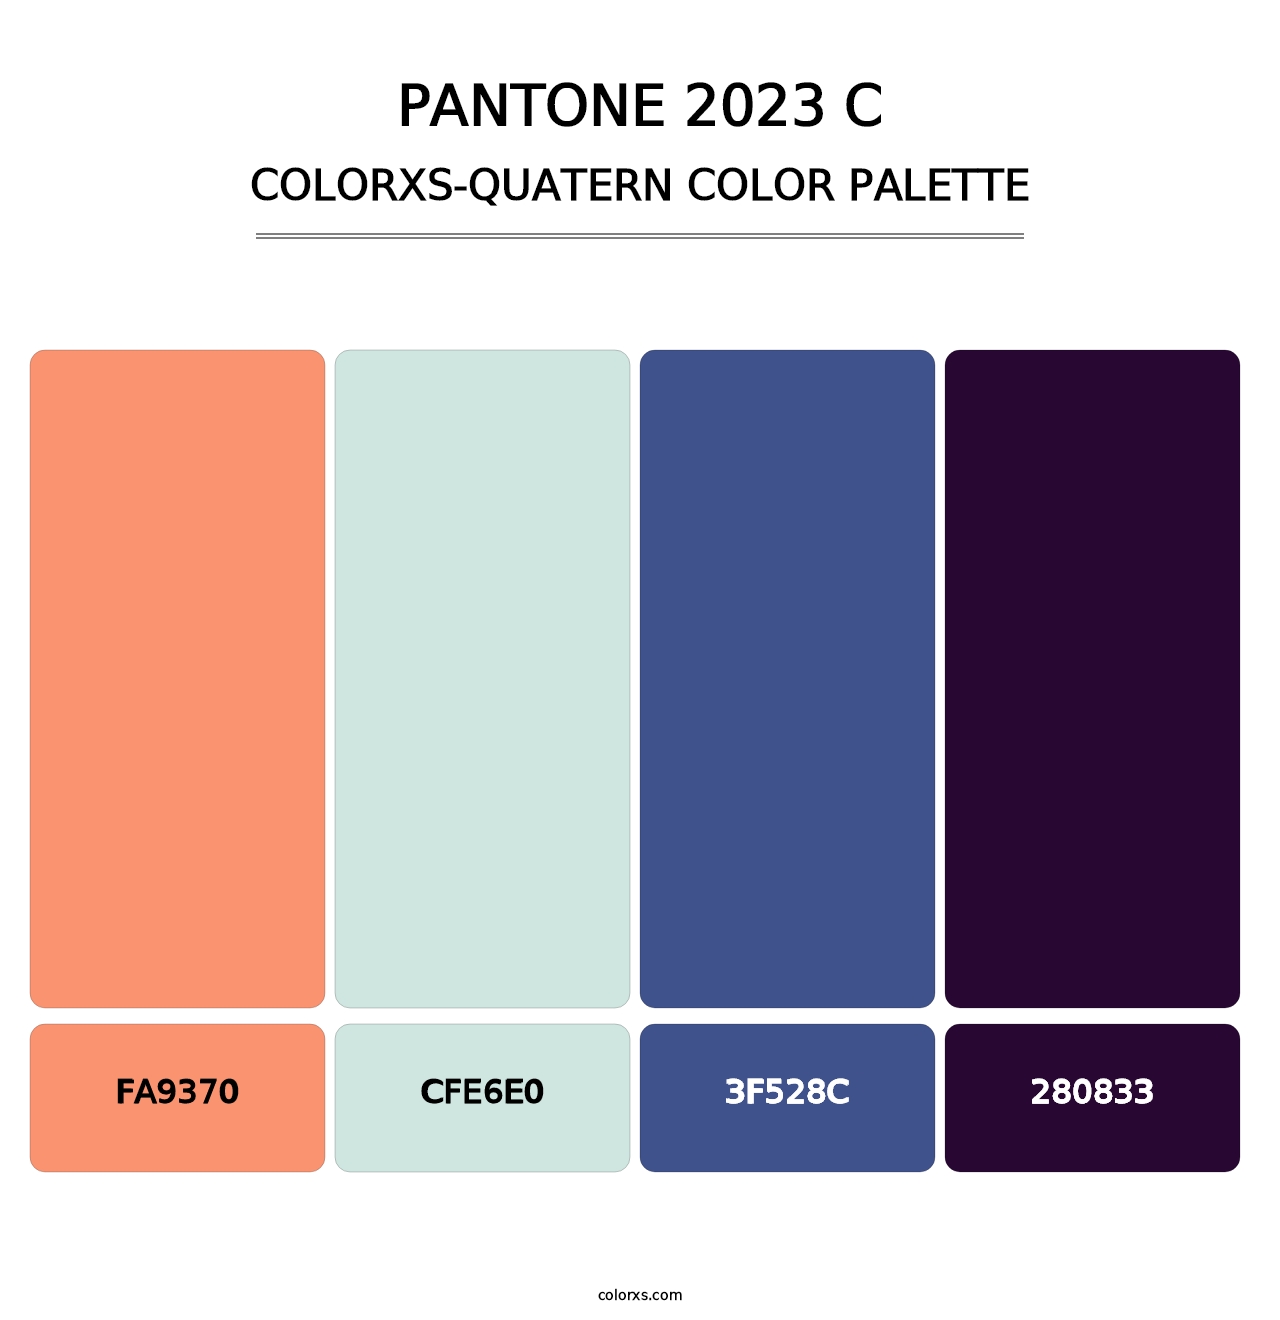 PANTONE 2023 C - Colorxs Quatern Palette